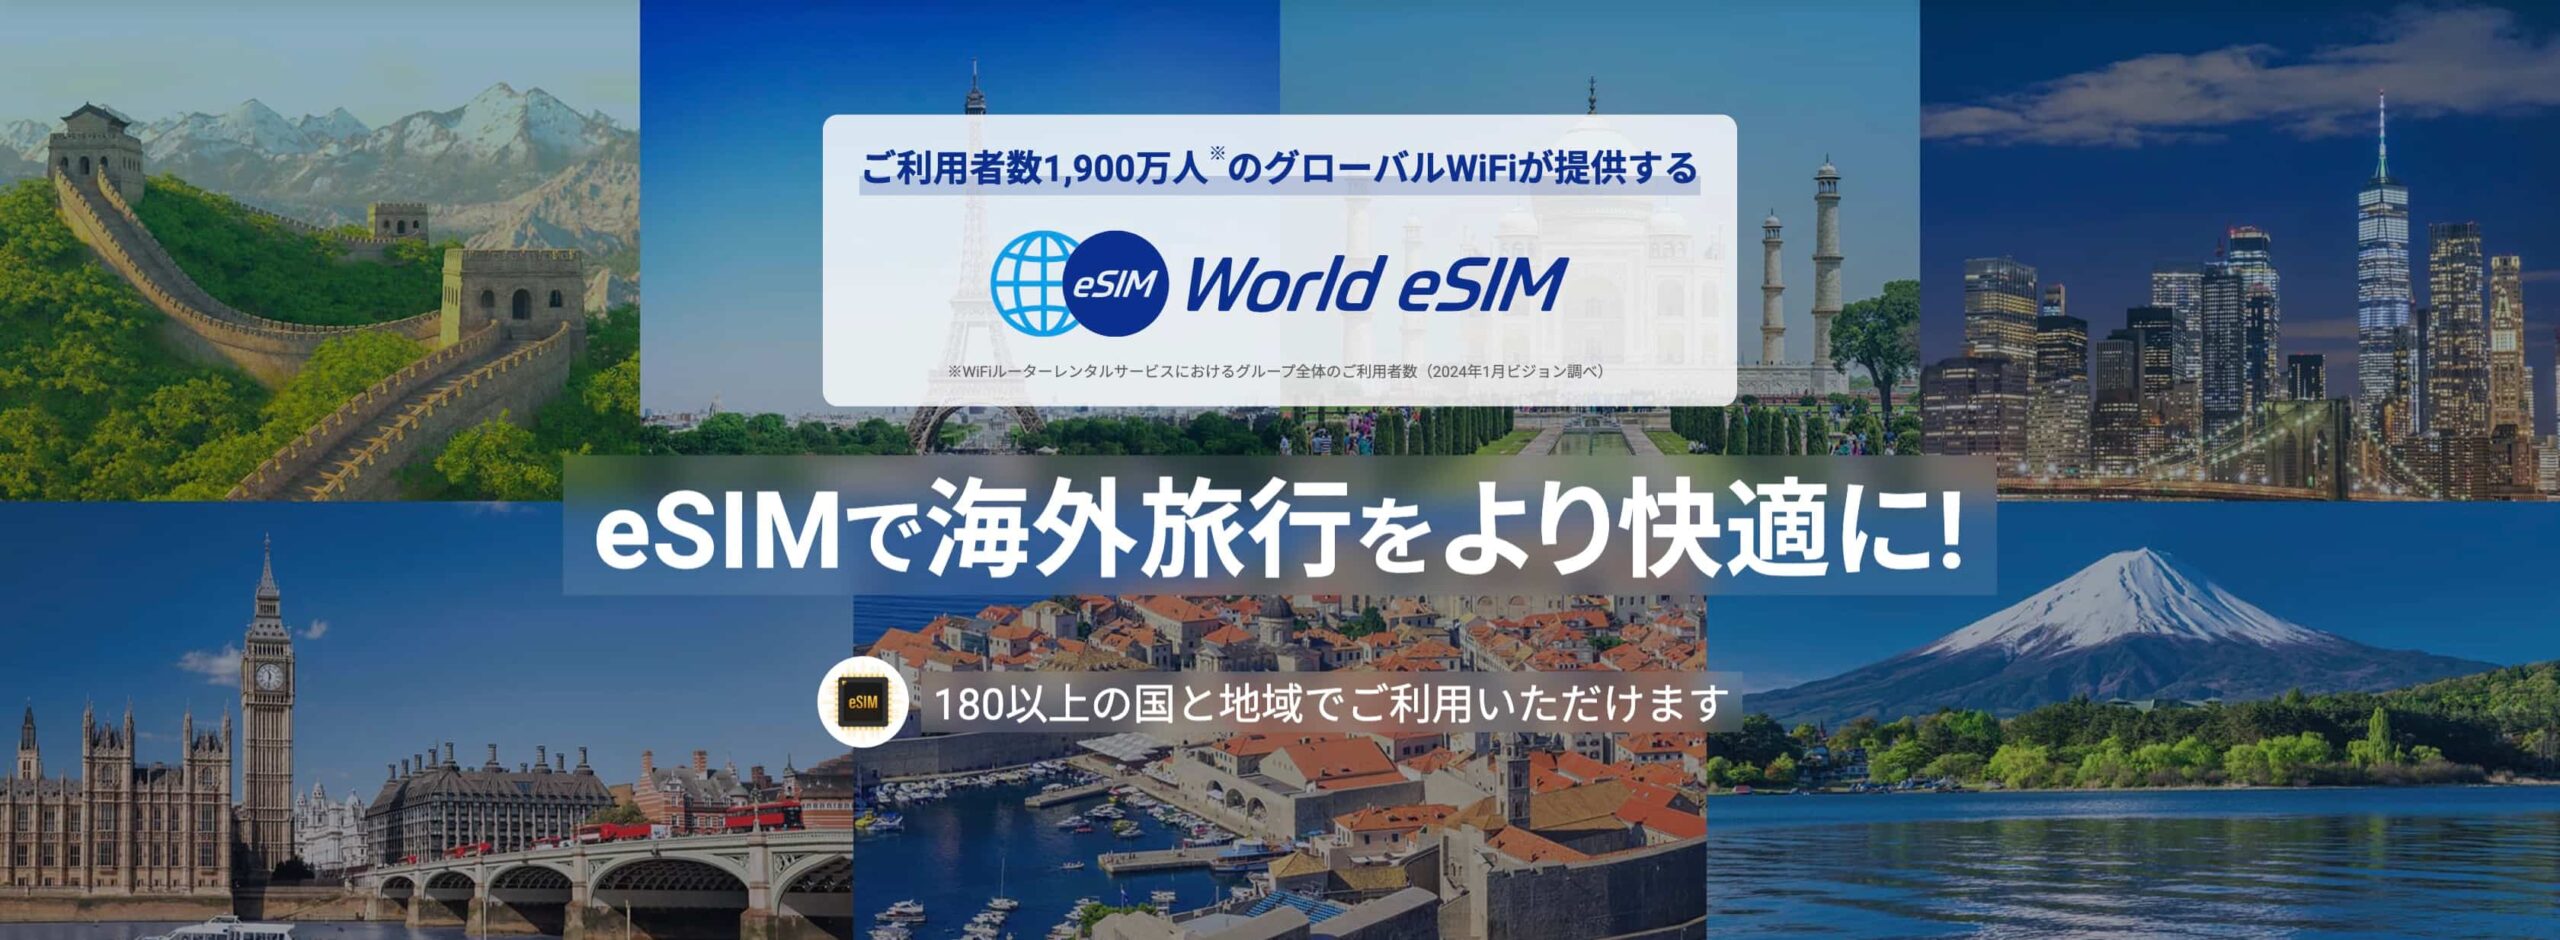 おすすめはWorld eSIM